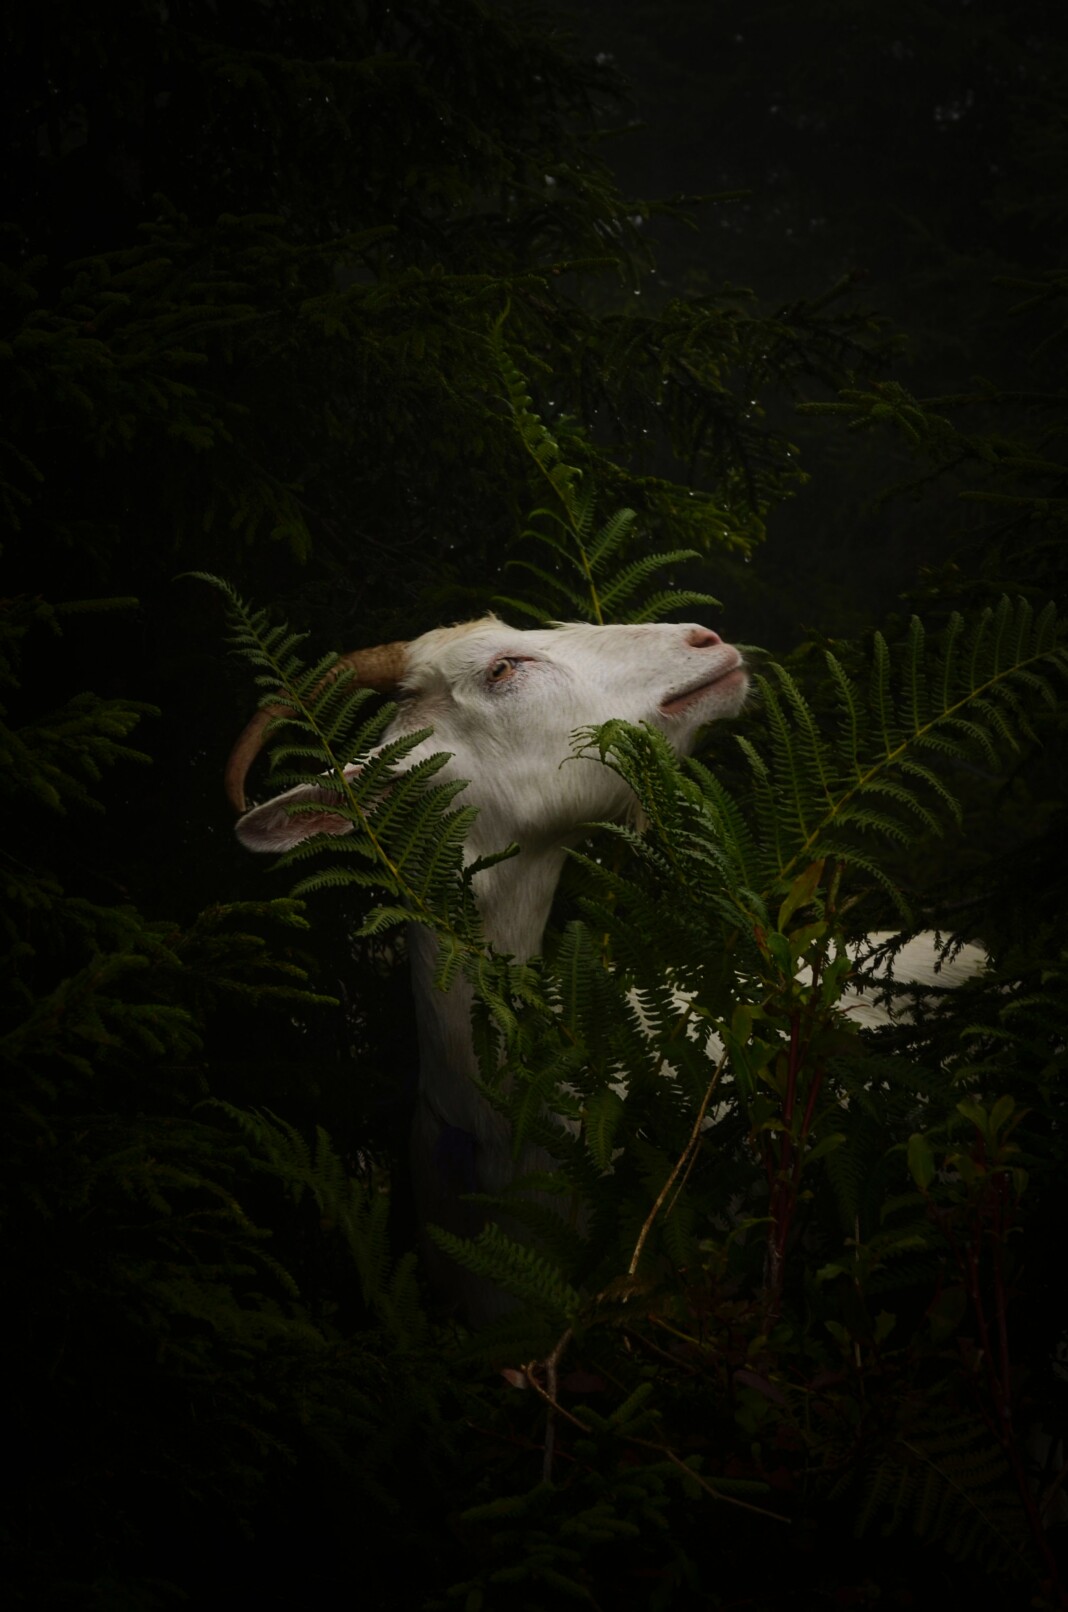 Une chèvre blanche parcourt un champ verdoyant, illustrant le concept de sacrifice de la chèvre dans différentes cultures